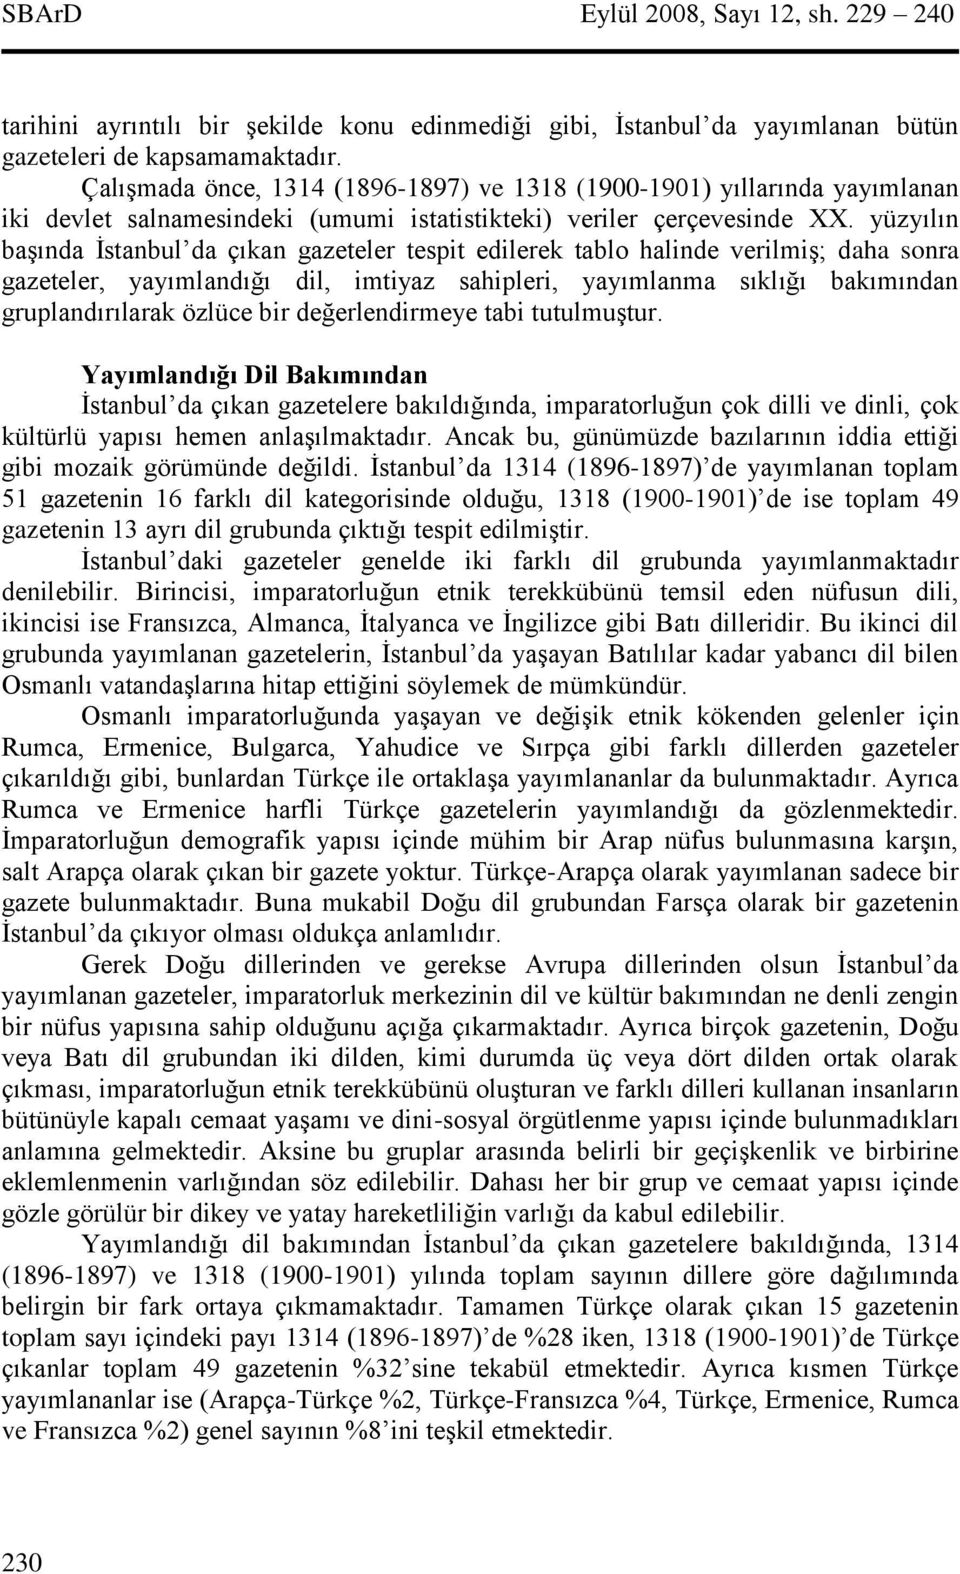 yüzyılın başında İstanbul da çıkan gazeteler tespit edilerek tablo halinde verilmiş; daha sonra gazeteler, yayımlandığı dil, imtiyaz sahipleri, yayımlanma sıklığı bakımından gruplandırılarak özlüce